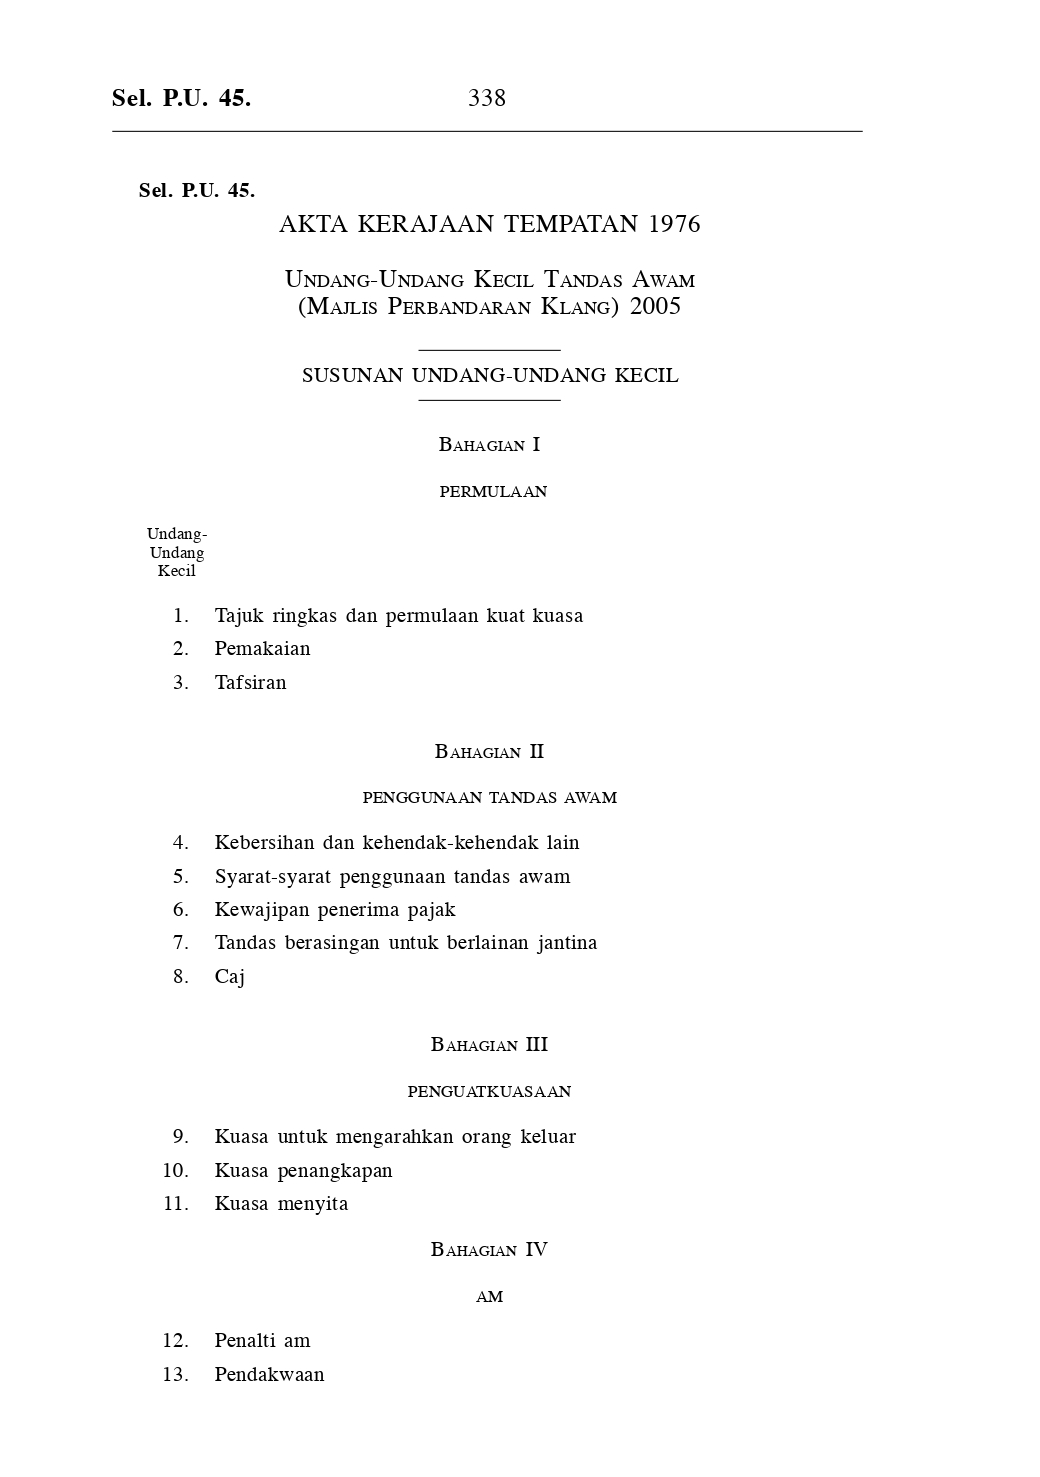 Undang-Undang Kecil Tandas Awam (Majlis Perbandaran Klang) 2005 - Akta Kerajaan Tempatan 1976